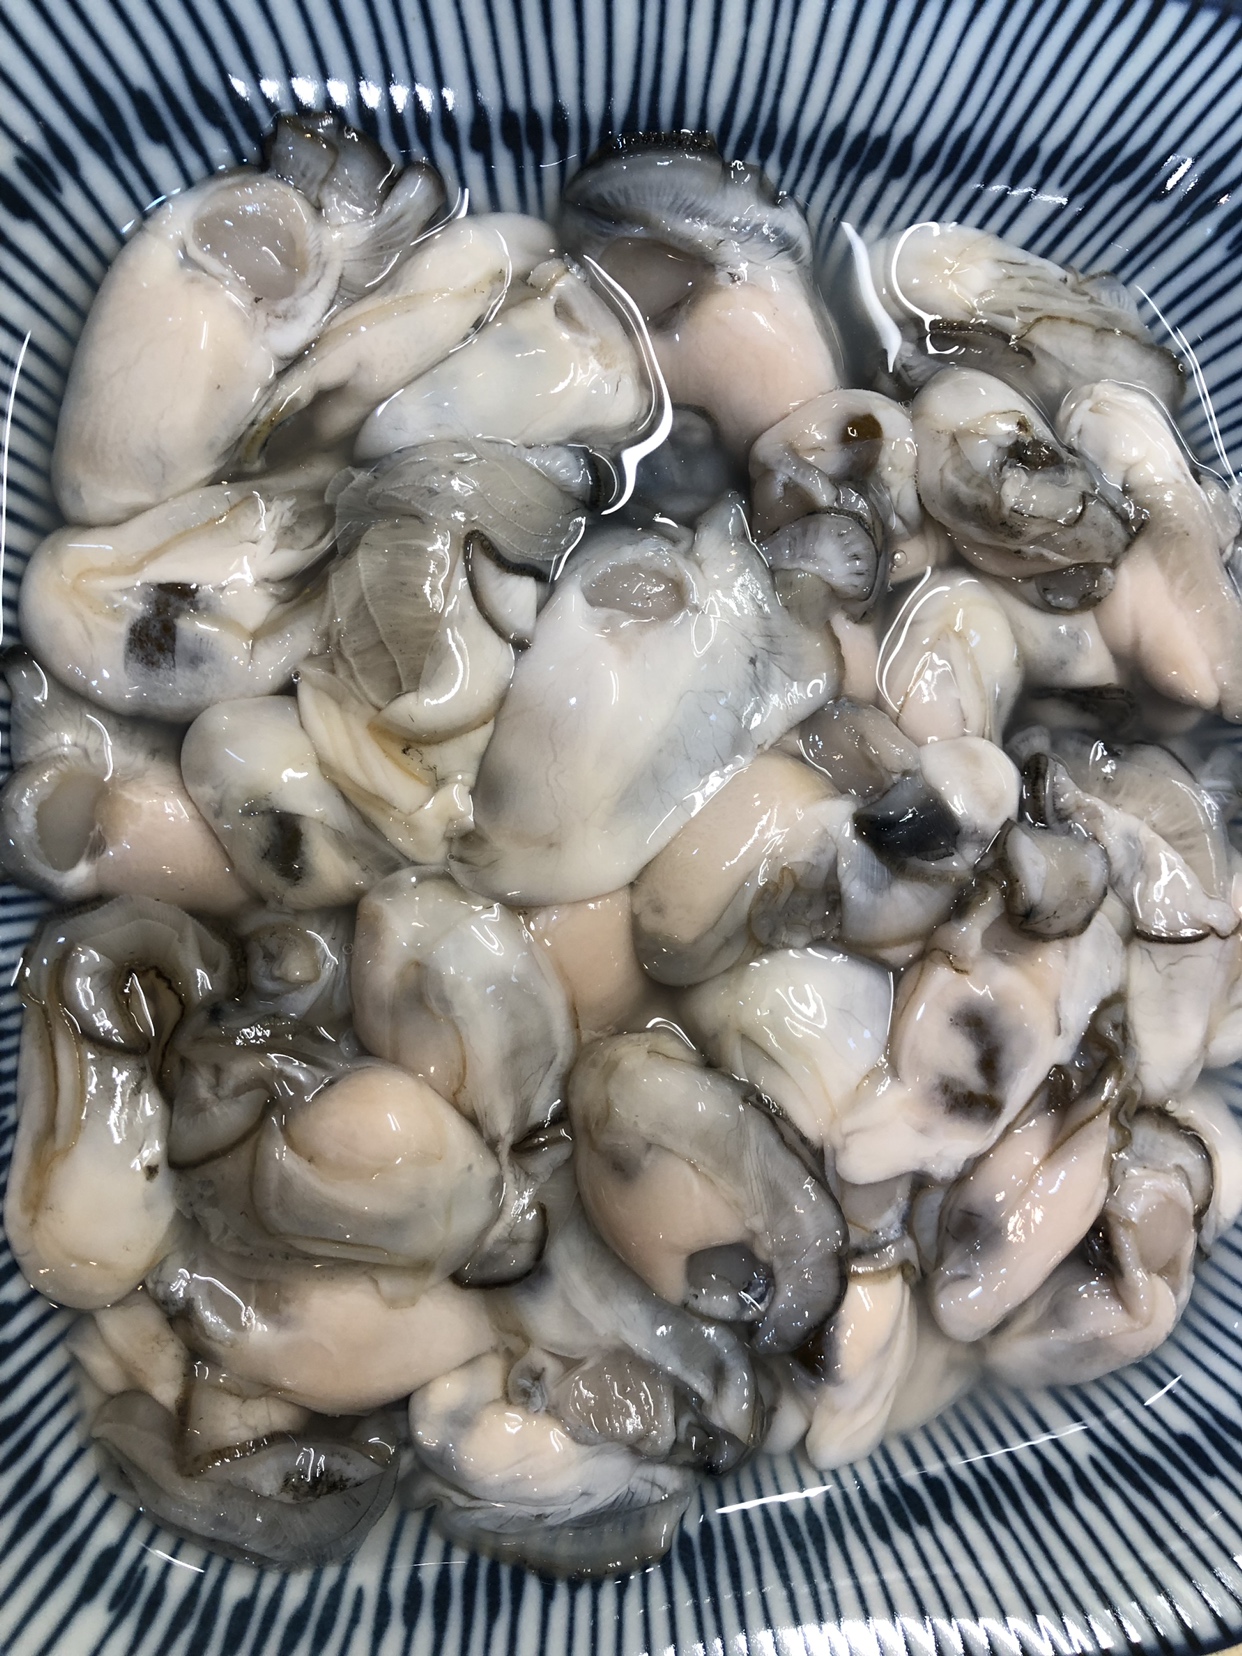 分享一个清洗海蛎/生蚝的方法😊